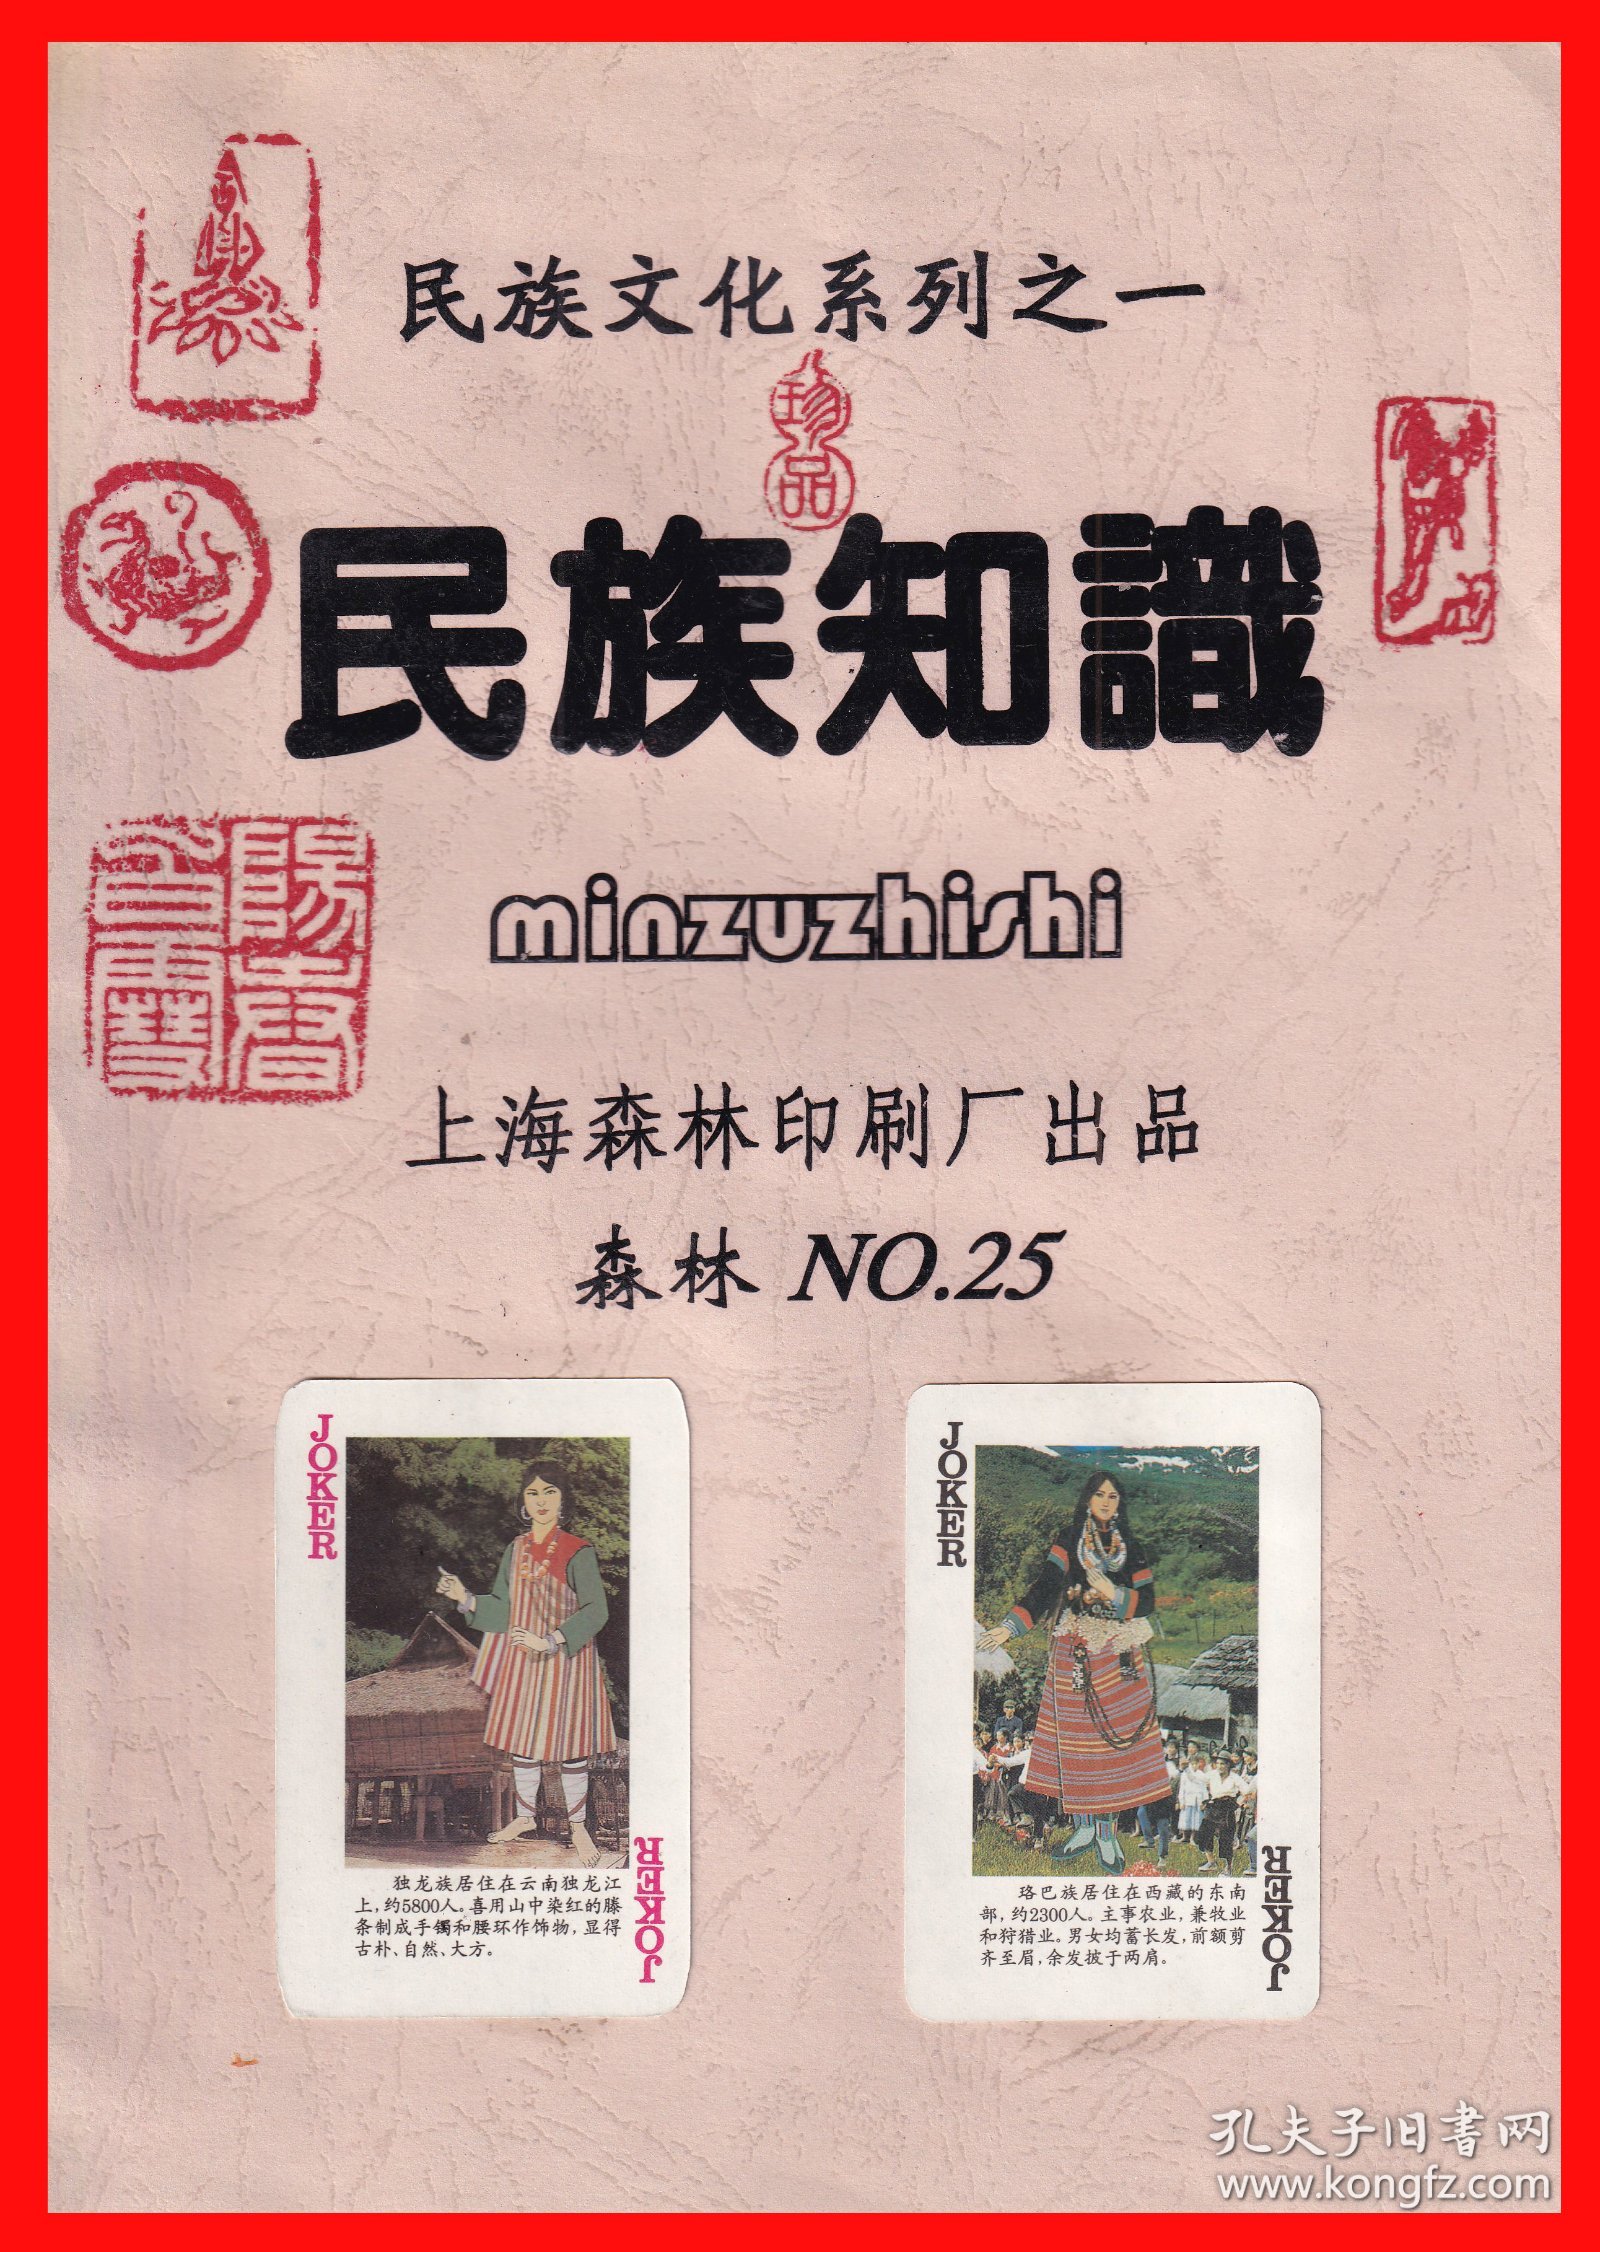 民族知识扑克册页贴片民族文化系列之一上海森林印刷厂出品NO.２５